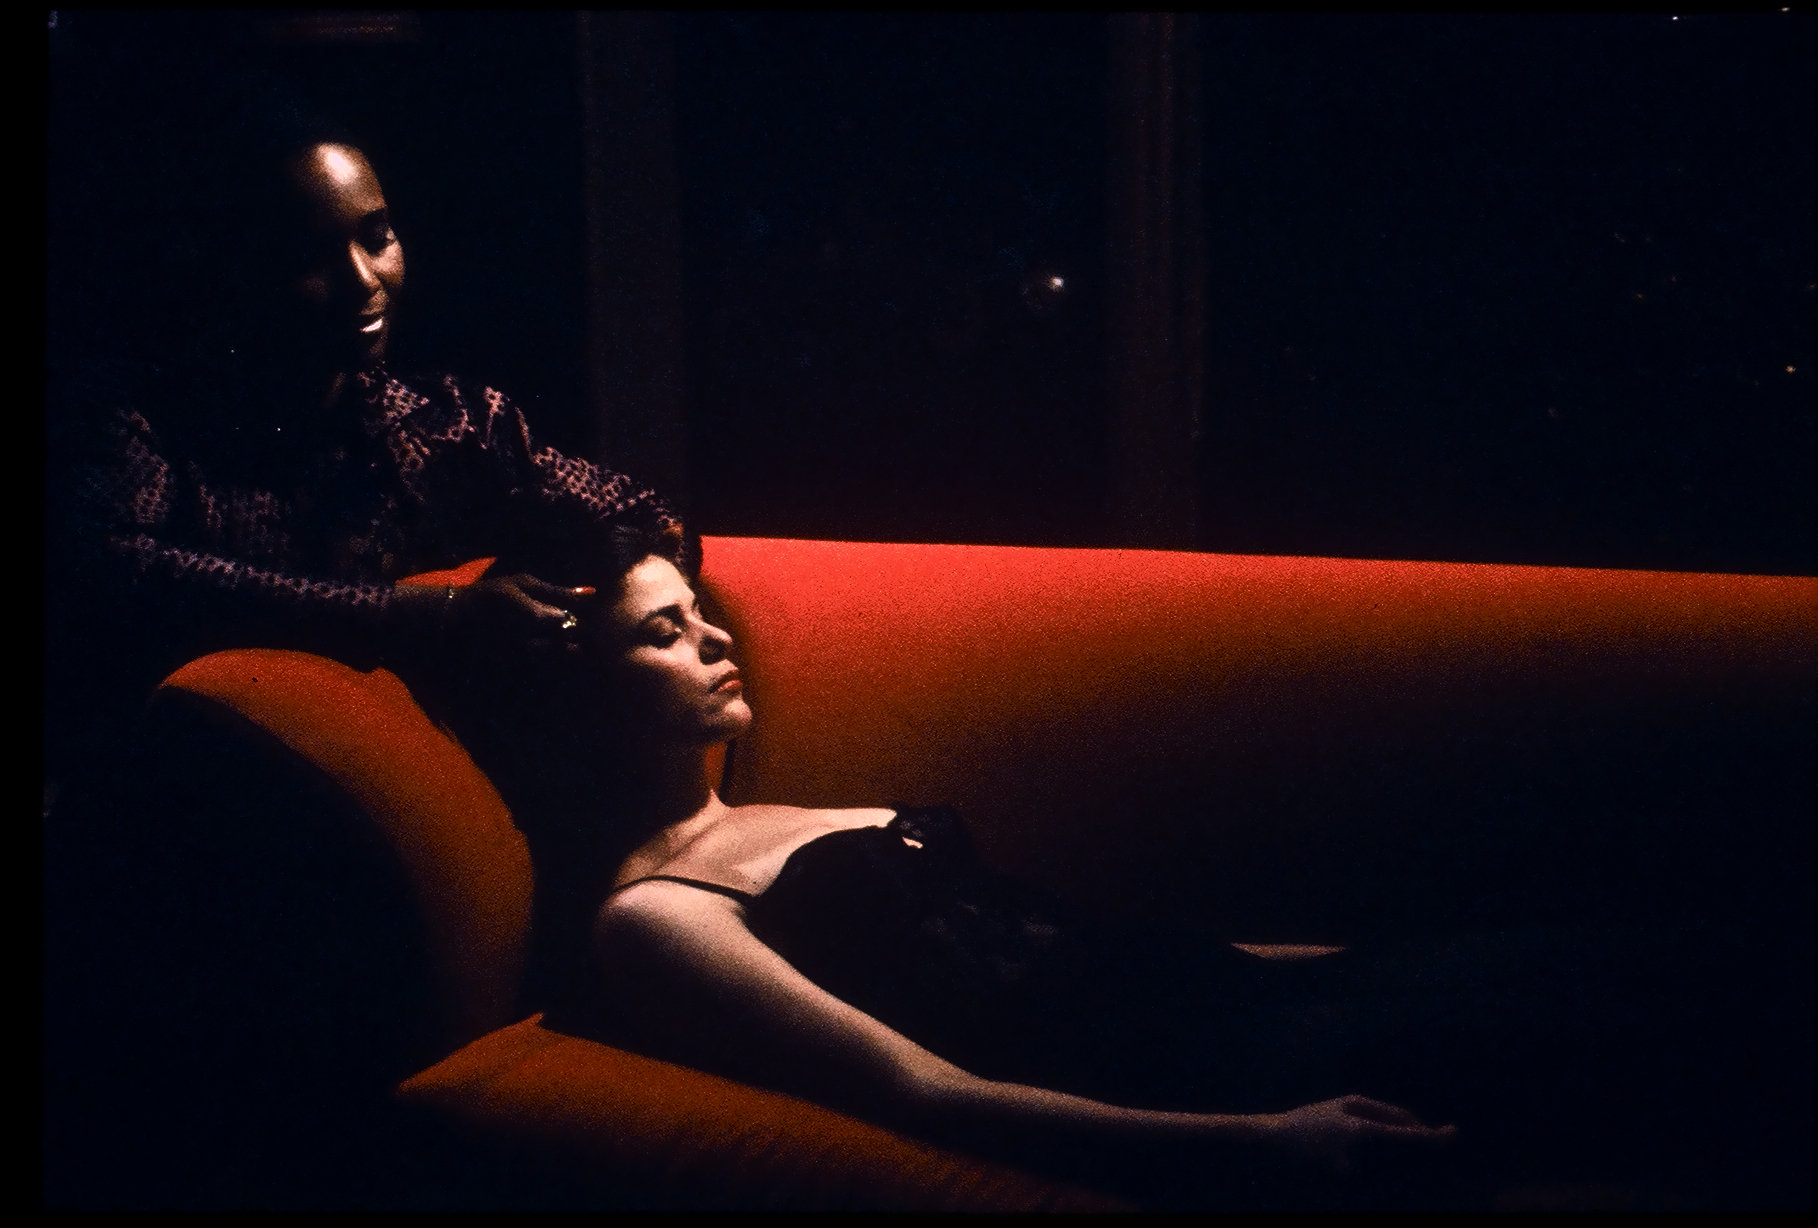 Linda Fiorentino and Suzzanne Douglas in Chain of Desire (1992)